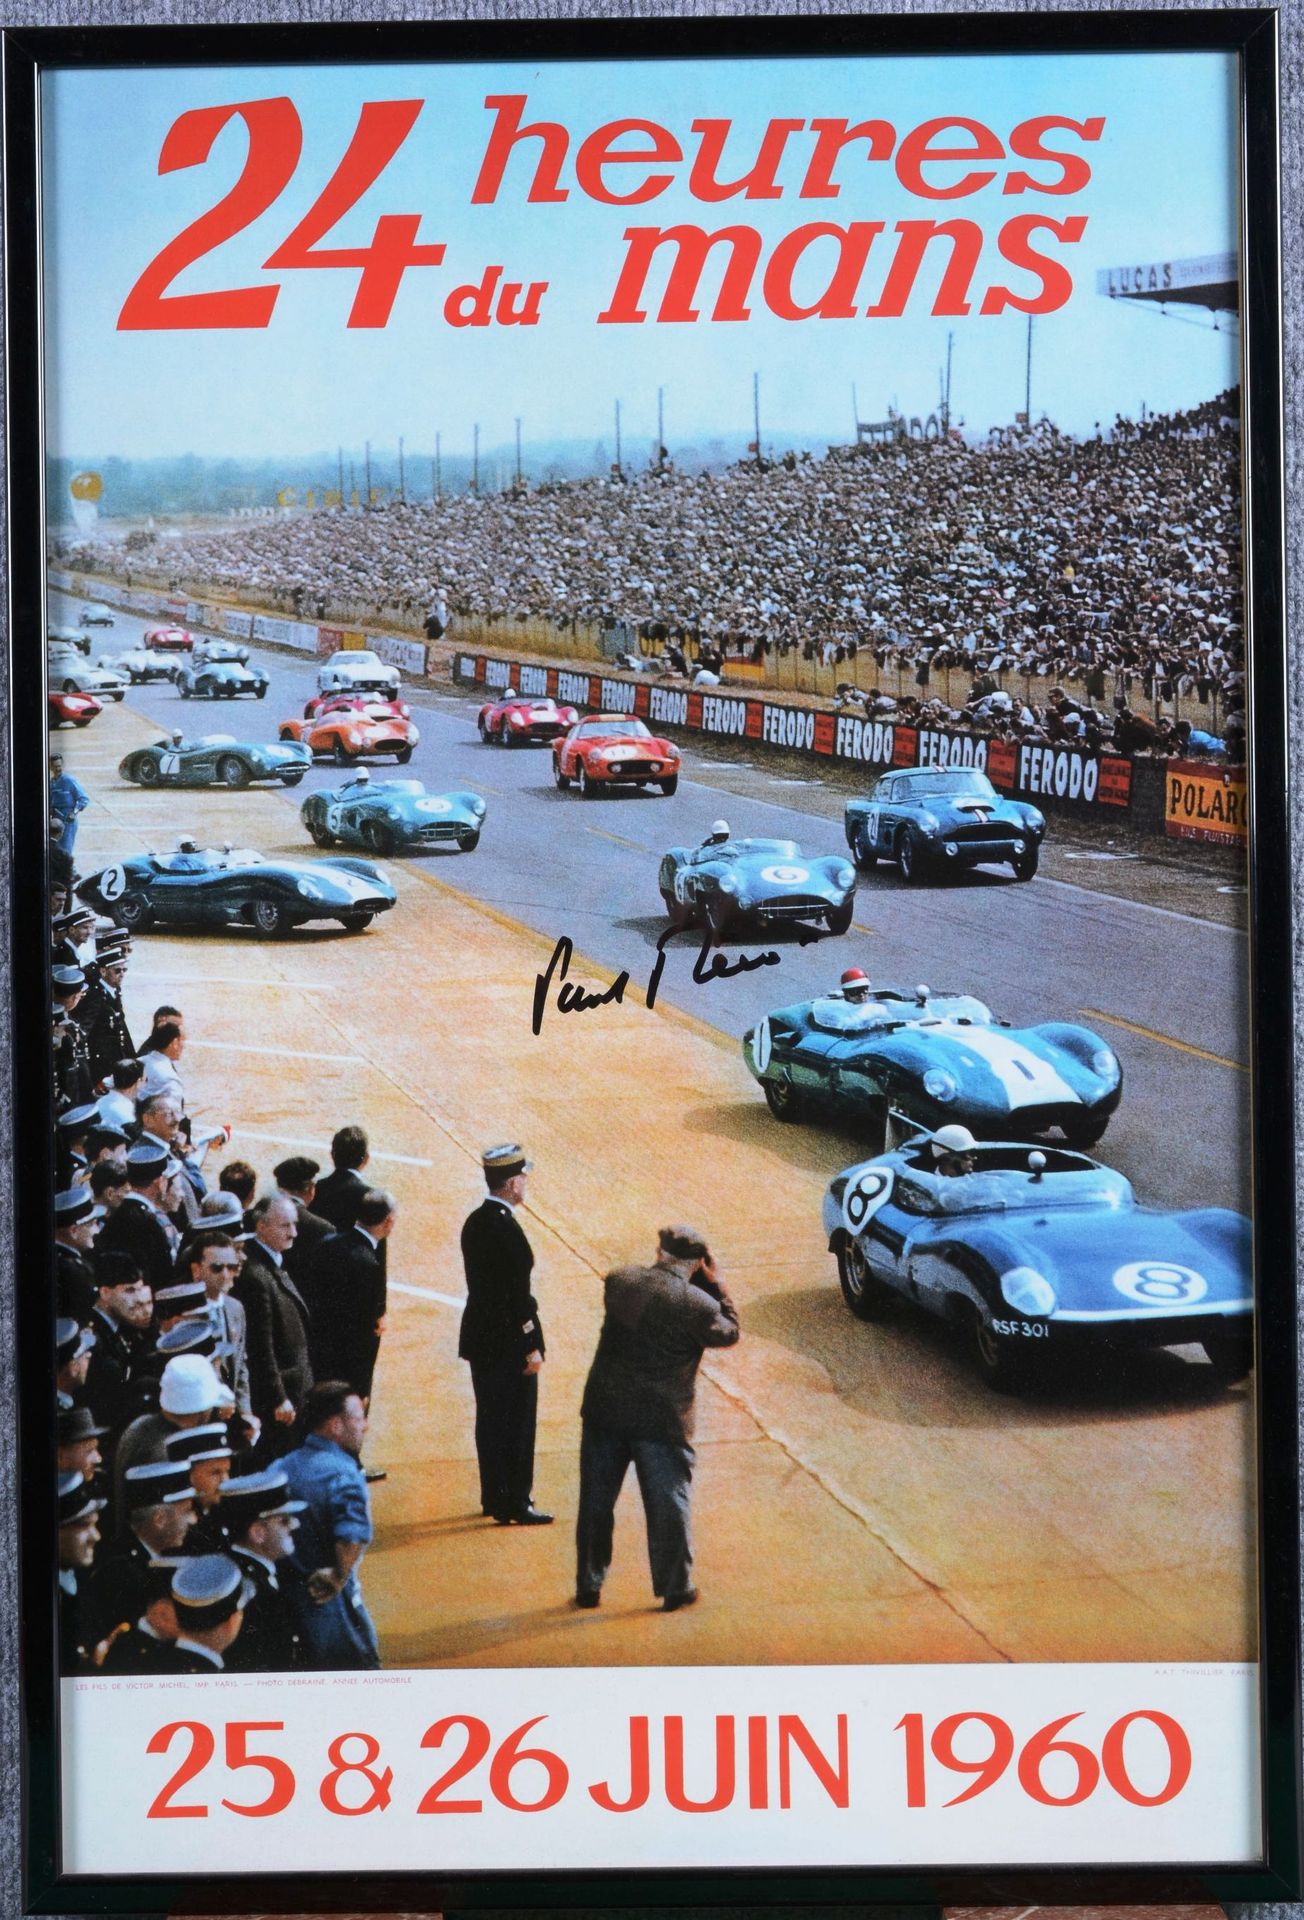 Paul FRERE Paul FRERE

Affiche (réédition) des 24 Heures du Mans 1960 reproduisa&hellip;